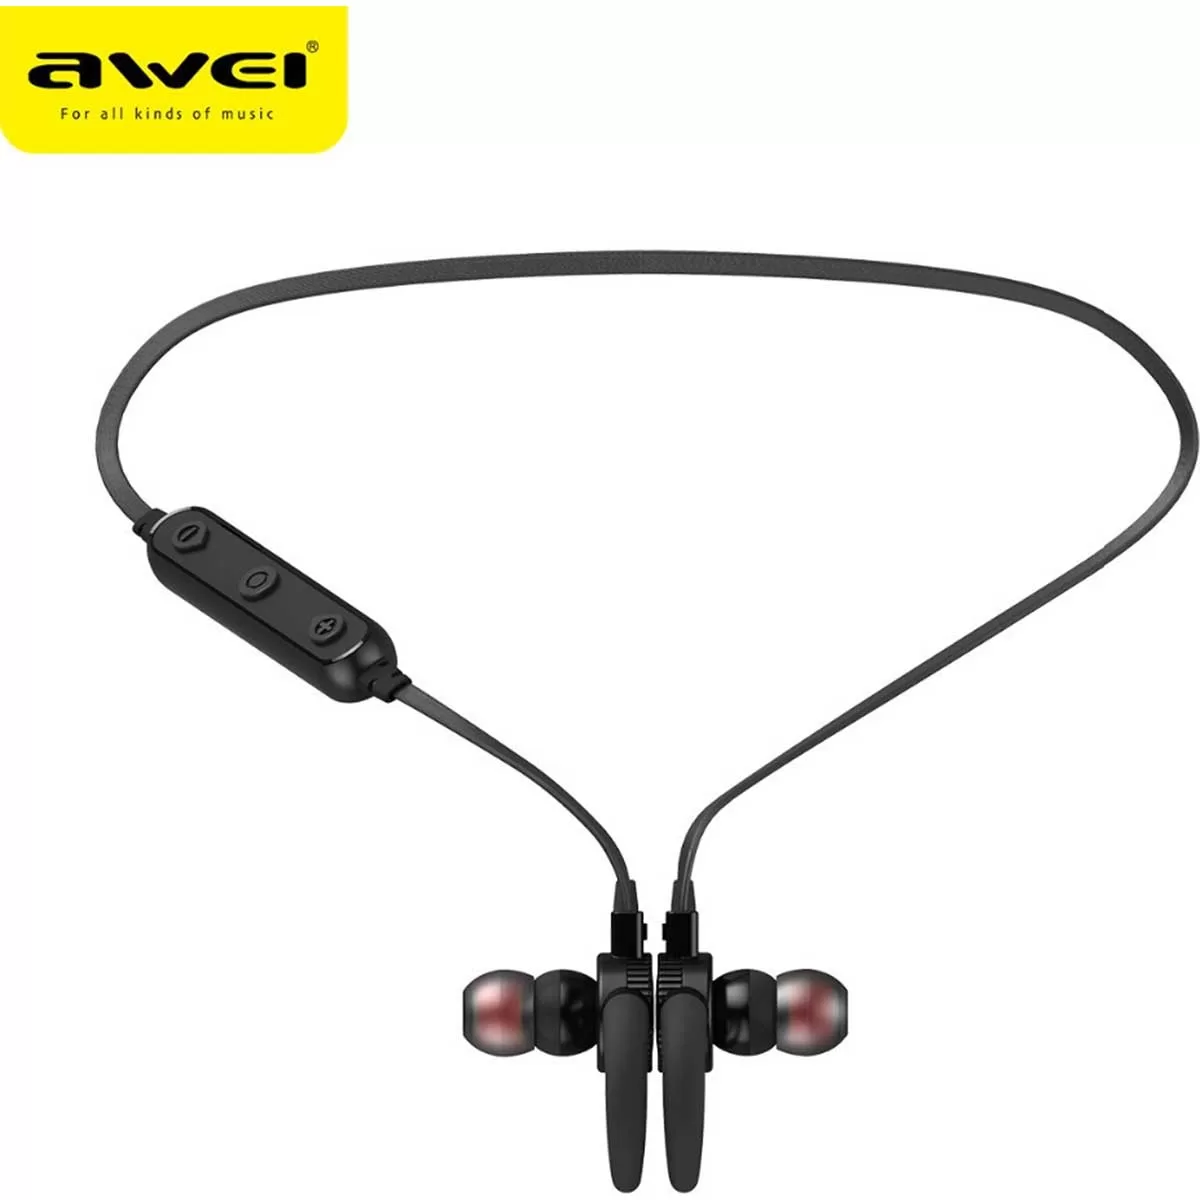 Ακουστικά Bluetooth Handsfree In-ear με Αντοχή στον Ιδρώτα Awei B925BL Μαύρα